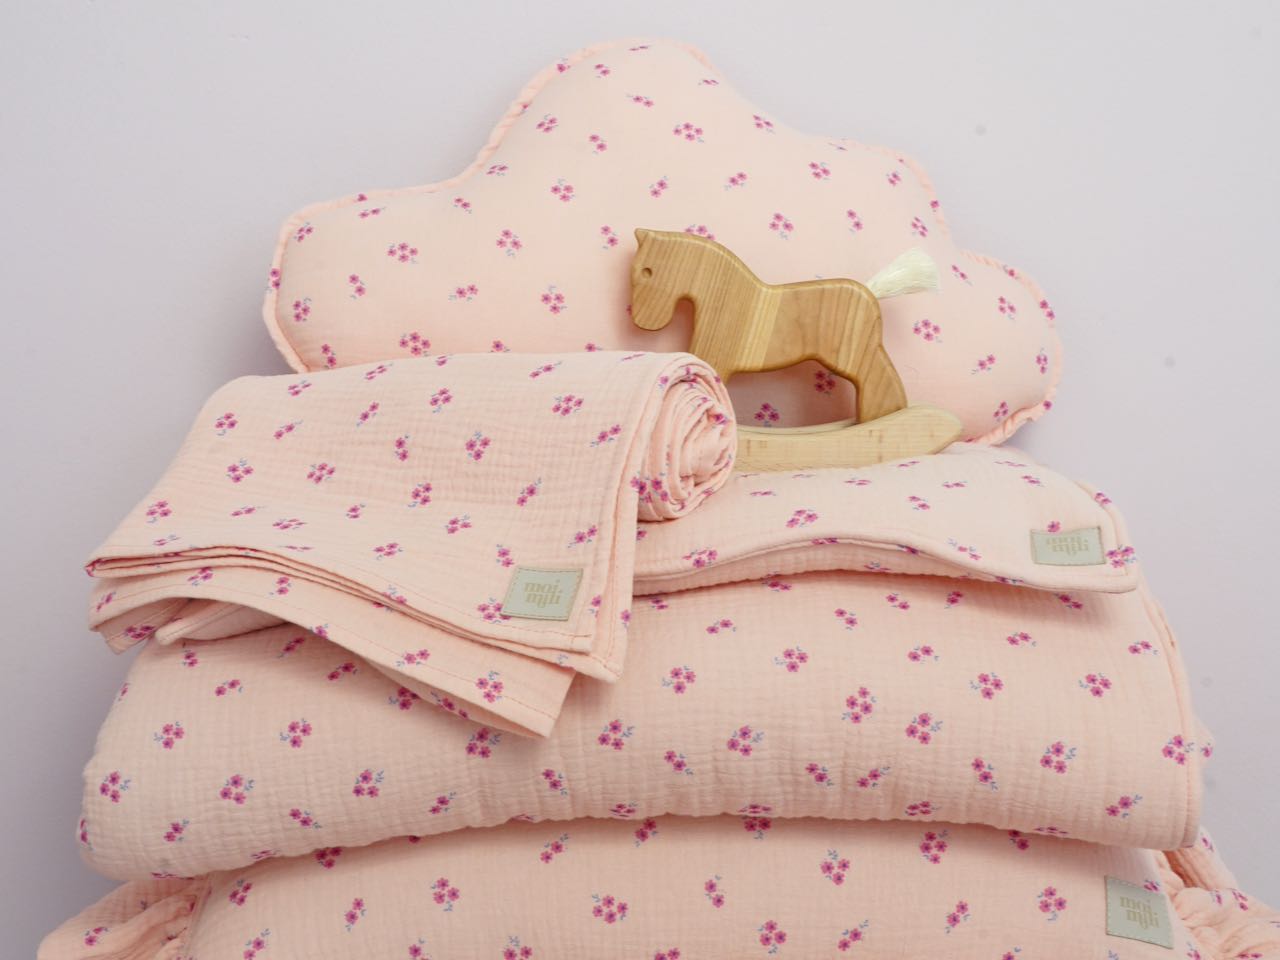 Muslin "Pink Forget-Me-Not" Cloud Pillow